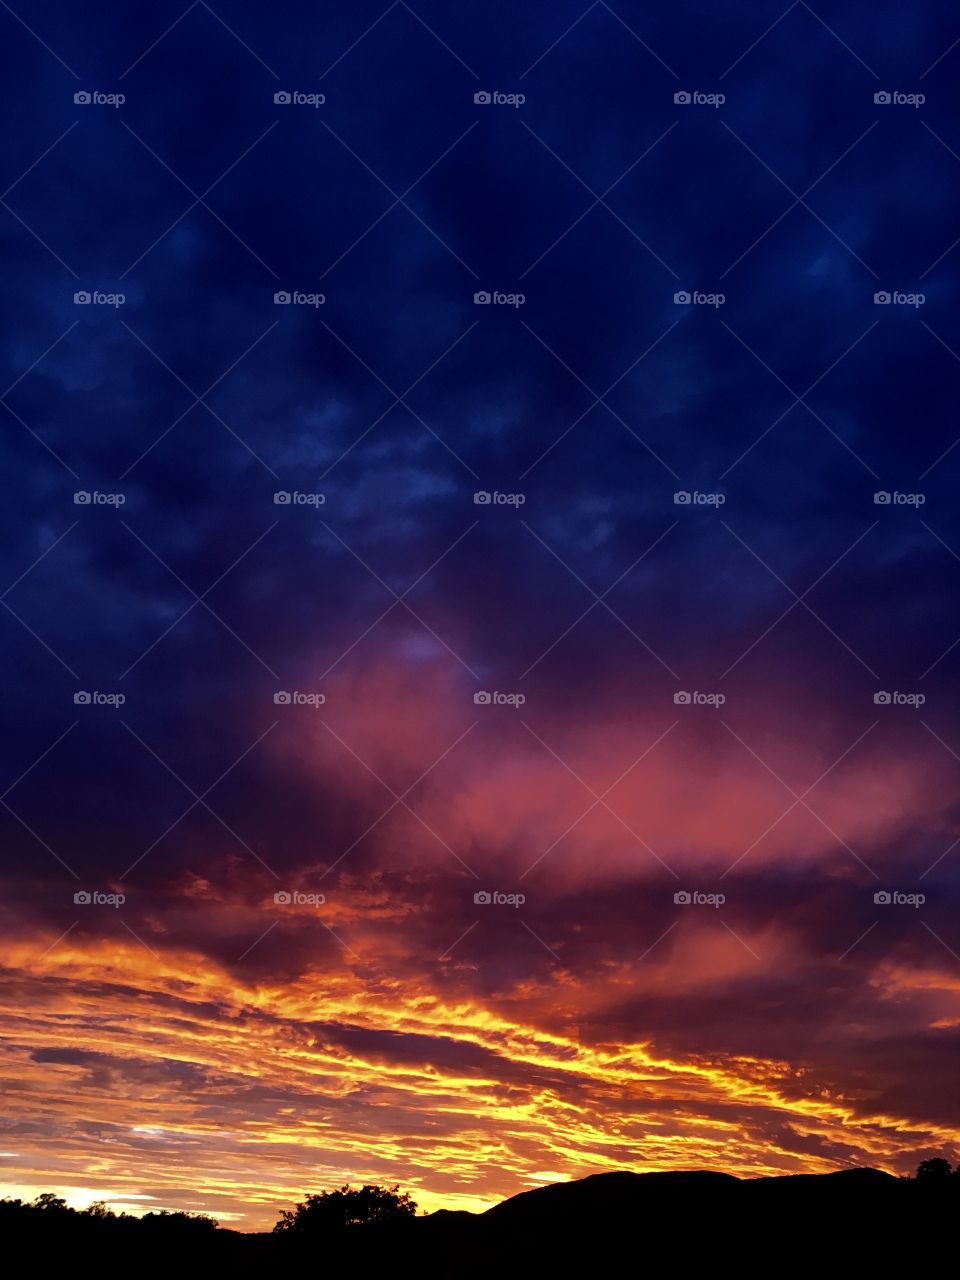 06h - Desperta, #Jundiaí!
Ótima 4a feira a todos. 
🌅
#sol
#sun
#sky
#céu
#nature
#manhã
#morning
#alvorada
#natureza
#horizonte
#fotografia
#paisagem
#amanhecer
#mobgraphia
#FotografeiEmJundiaí
#brazil_mobile